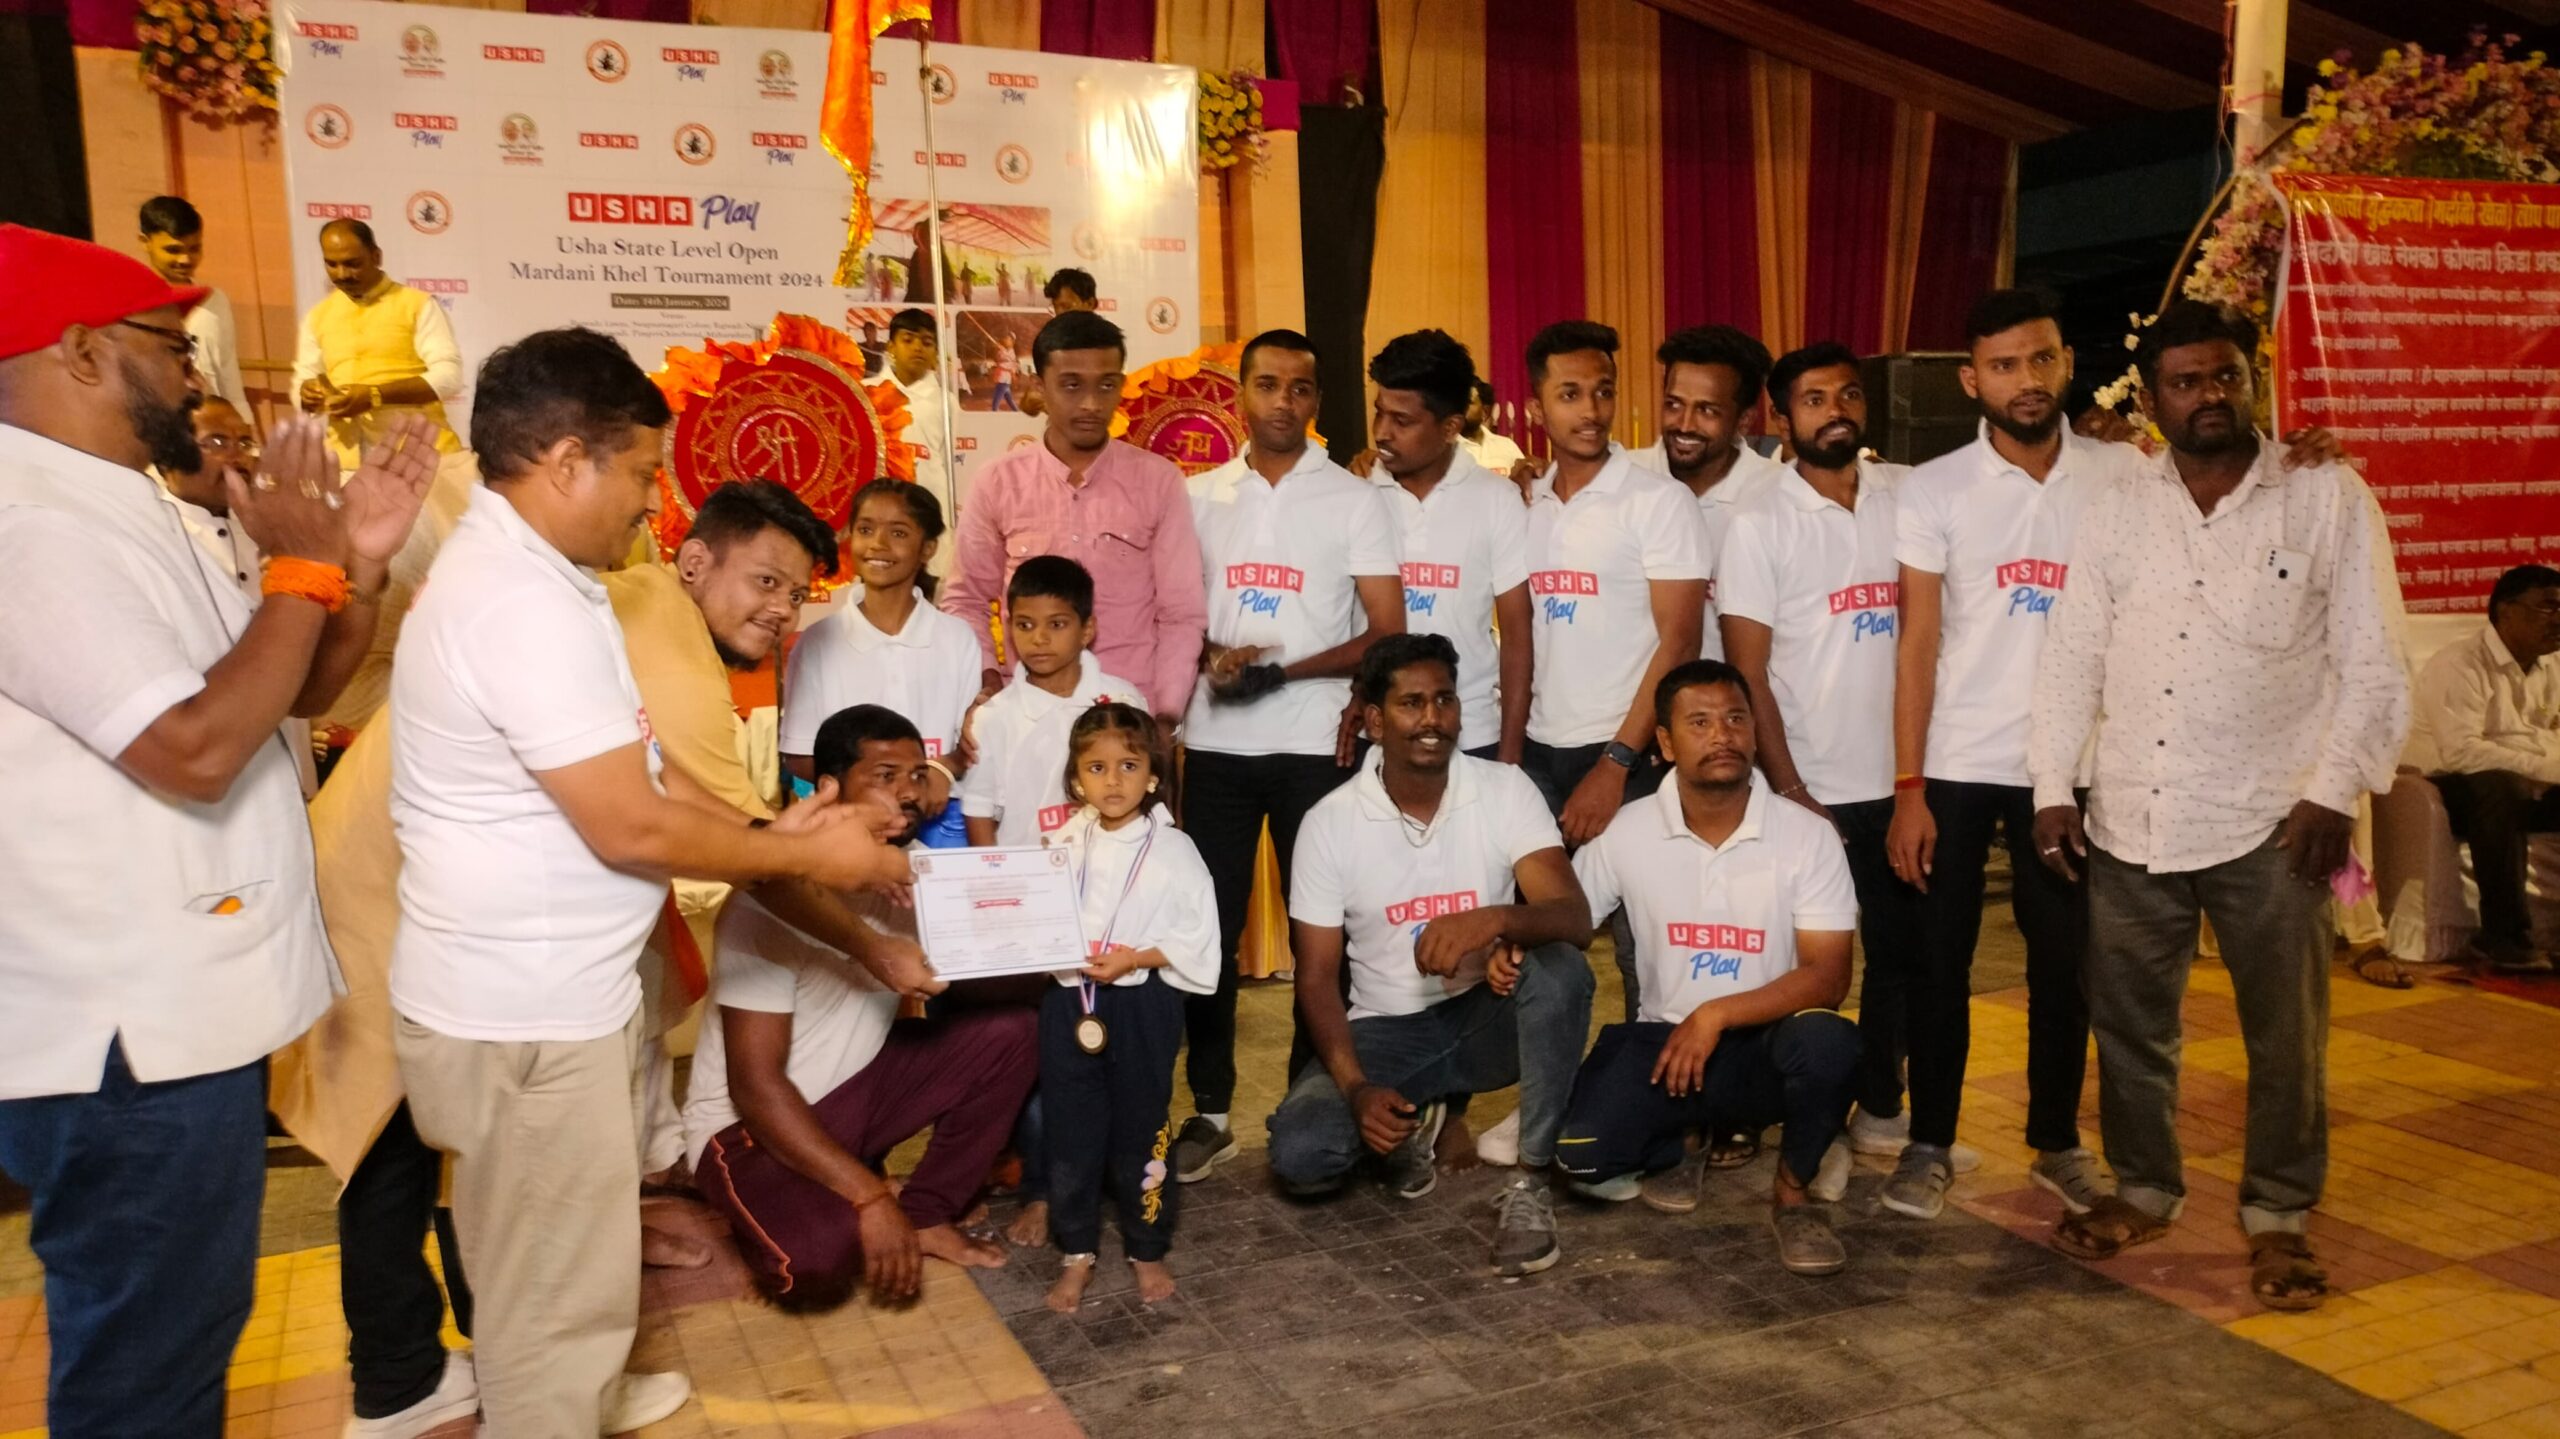 Usha International Sponsors State-Level Mardani Khel Competition